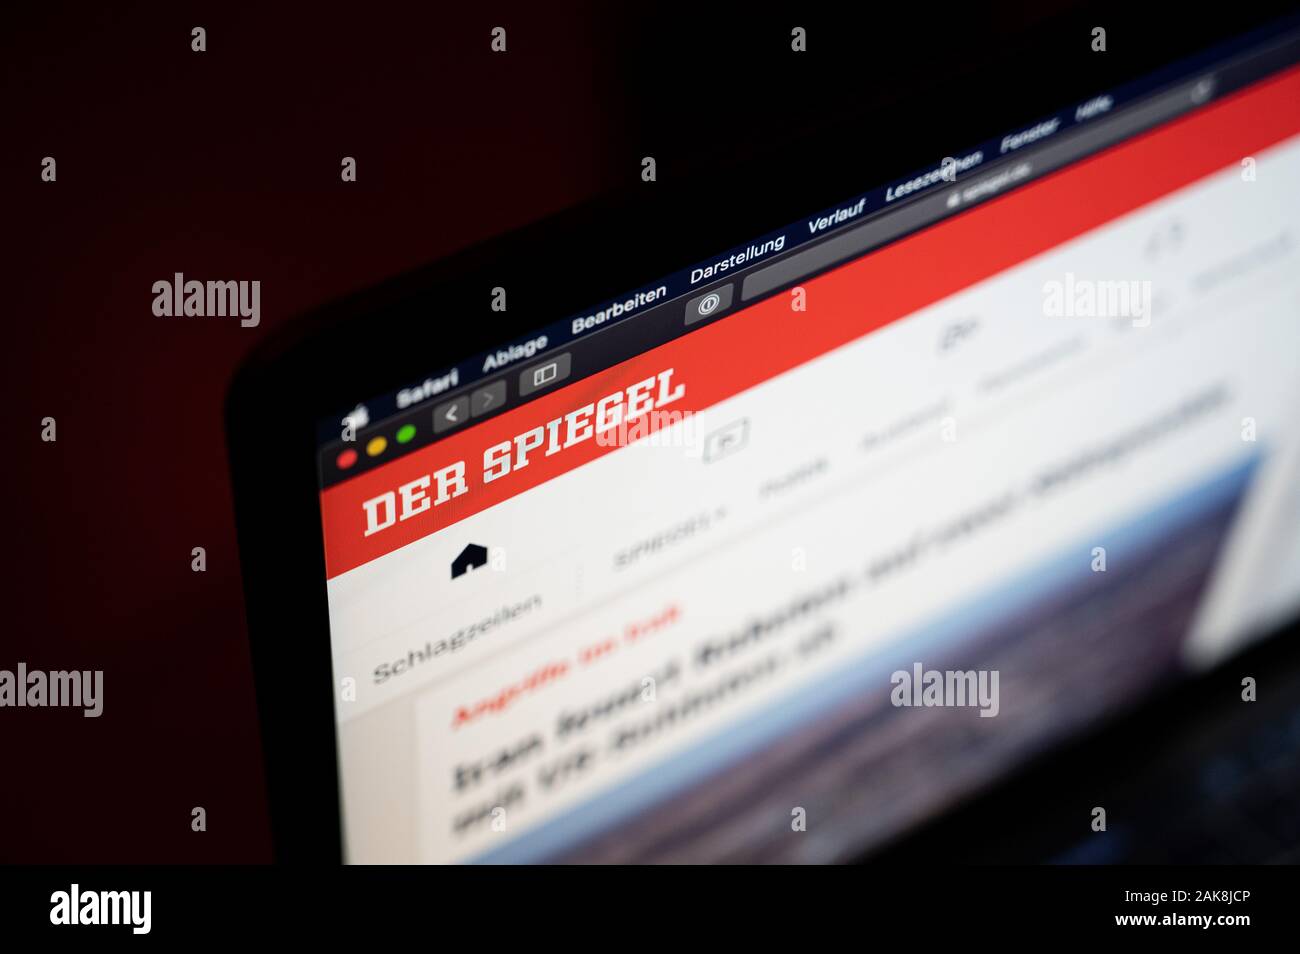 Hamburgo, Alemania. 08 ene, 2020. El sitio web de la revista de noticias "Der Spiegel" pueden ser vistos en una portátil. Después de unos 25 años, el nombre y el logo 'Spiegel Online' desaparecerá. El sitio web ahora se llama 'Der Spiegel', al igual que la revista de noticias. Crédito: Daniel Reinhardt/dpa/Alamy Live News Foto de stock